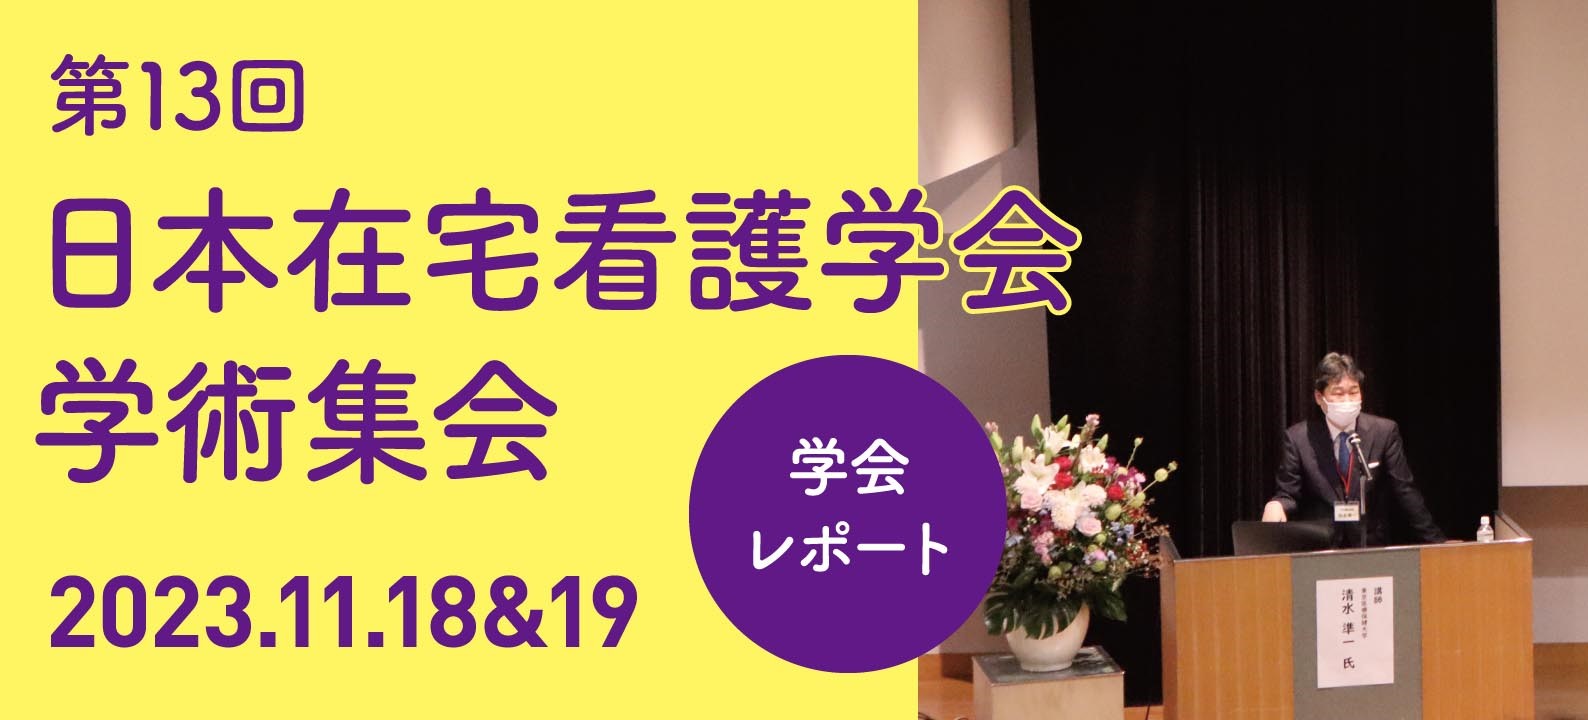 【学会レポート】第13回日本在宅看護学会学術集会